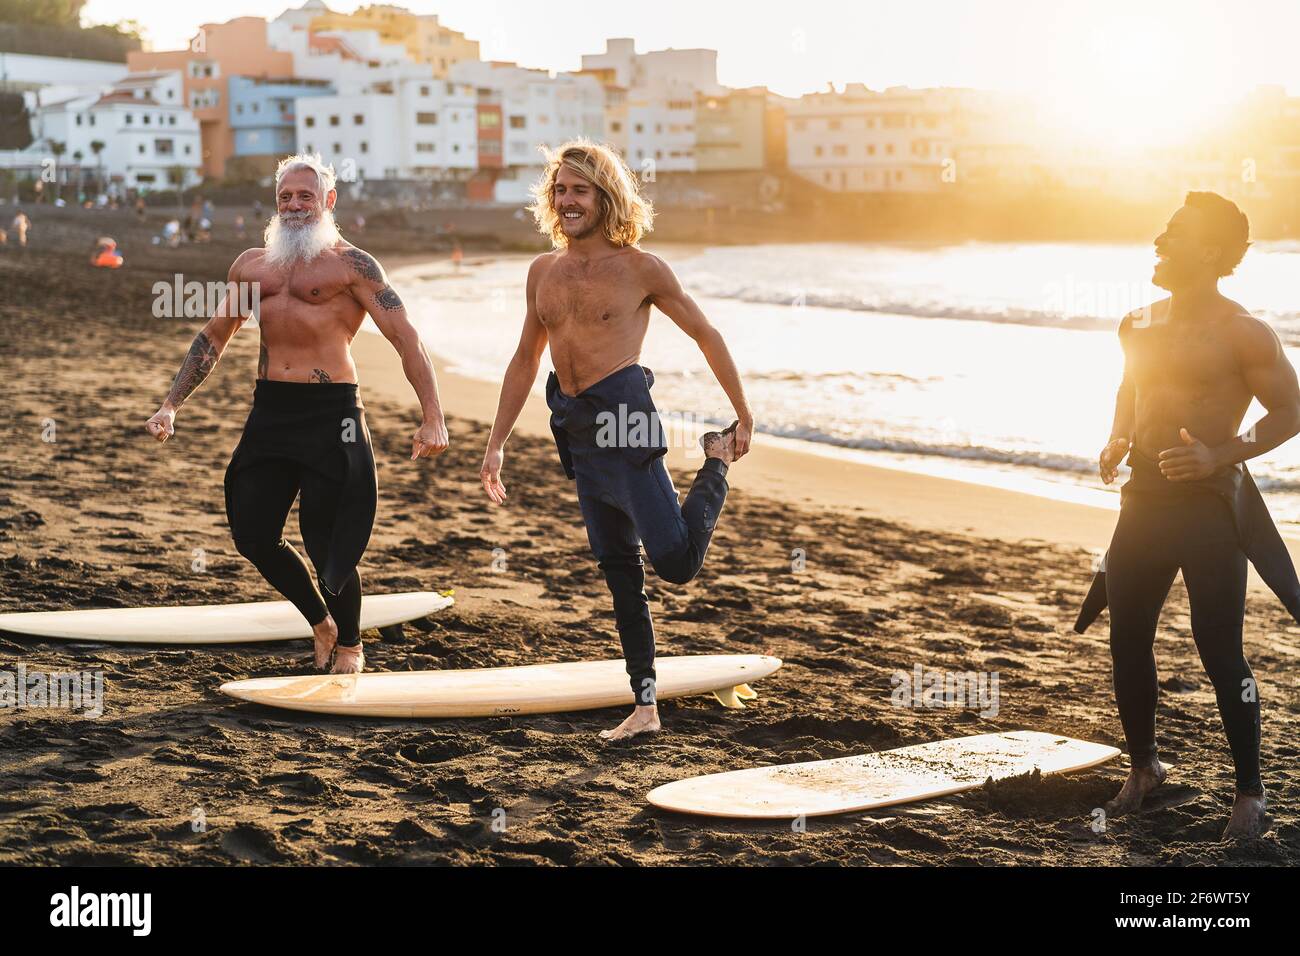 Felices surfistas con diferentes edades y carreras haciendo calor ejercicios antes de surfear durante la puesta de sol Foto de stock